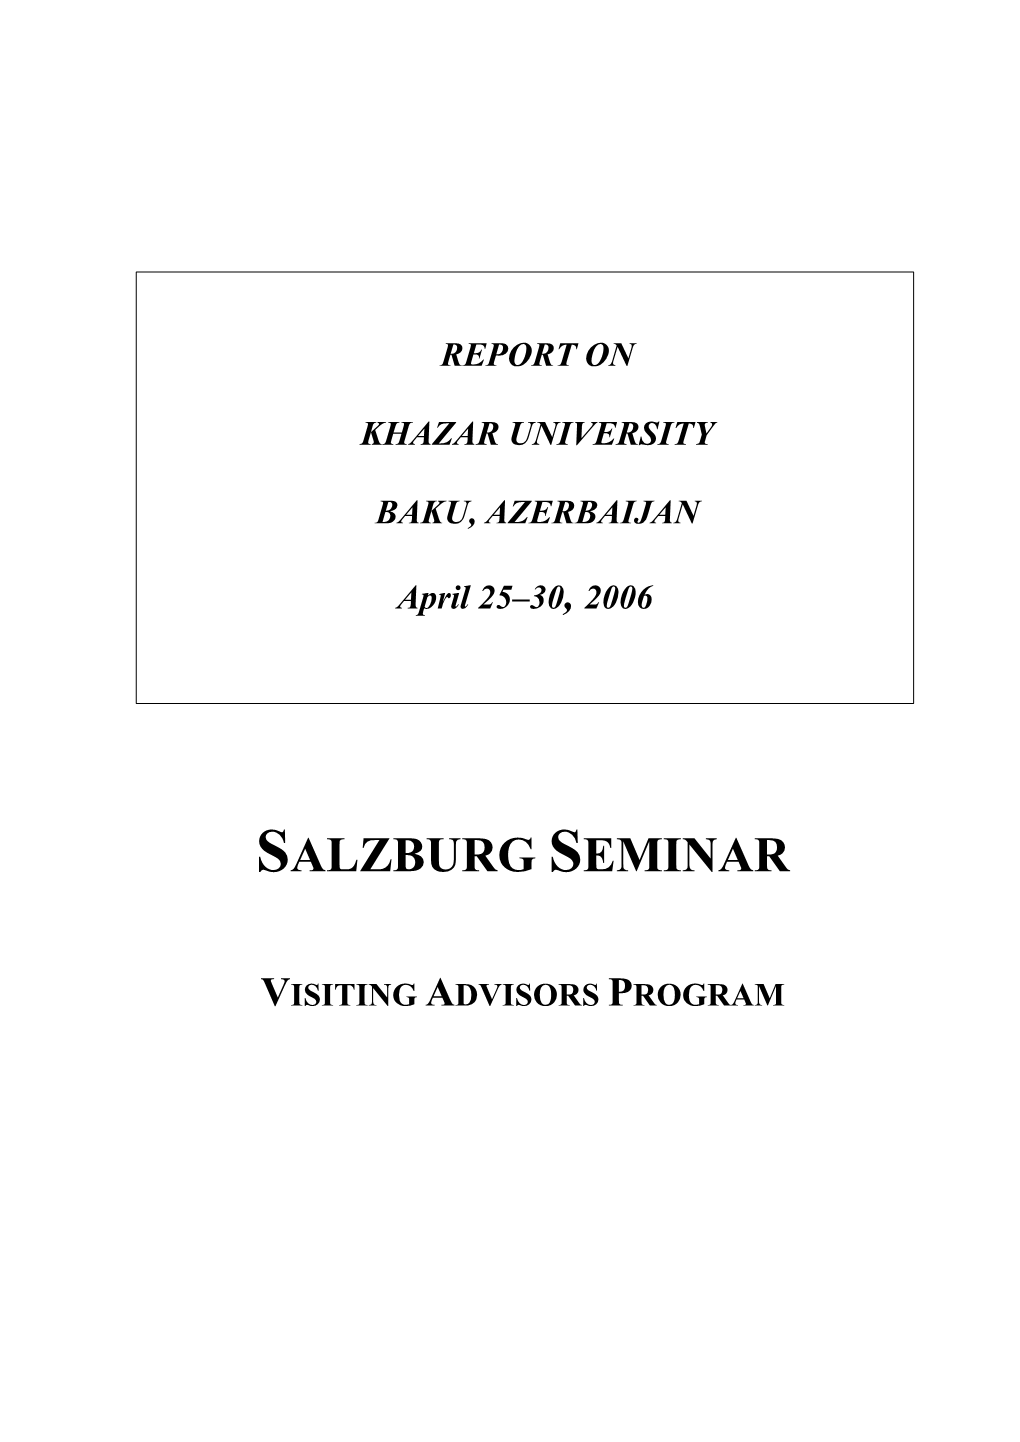 Salzburg Seminar